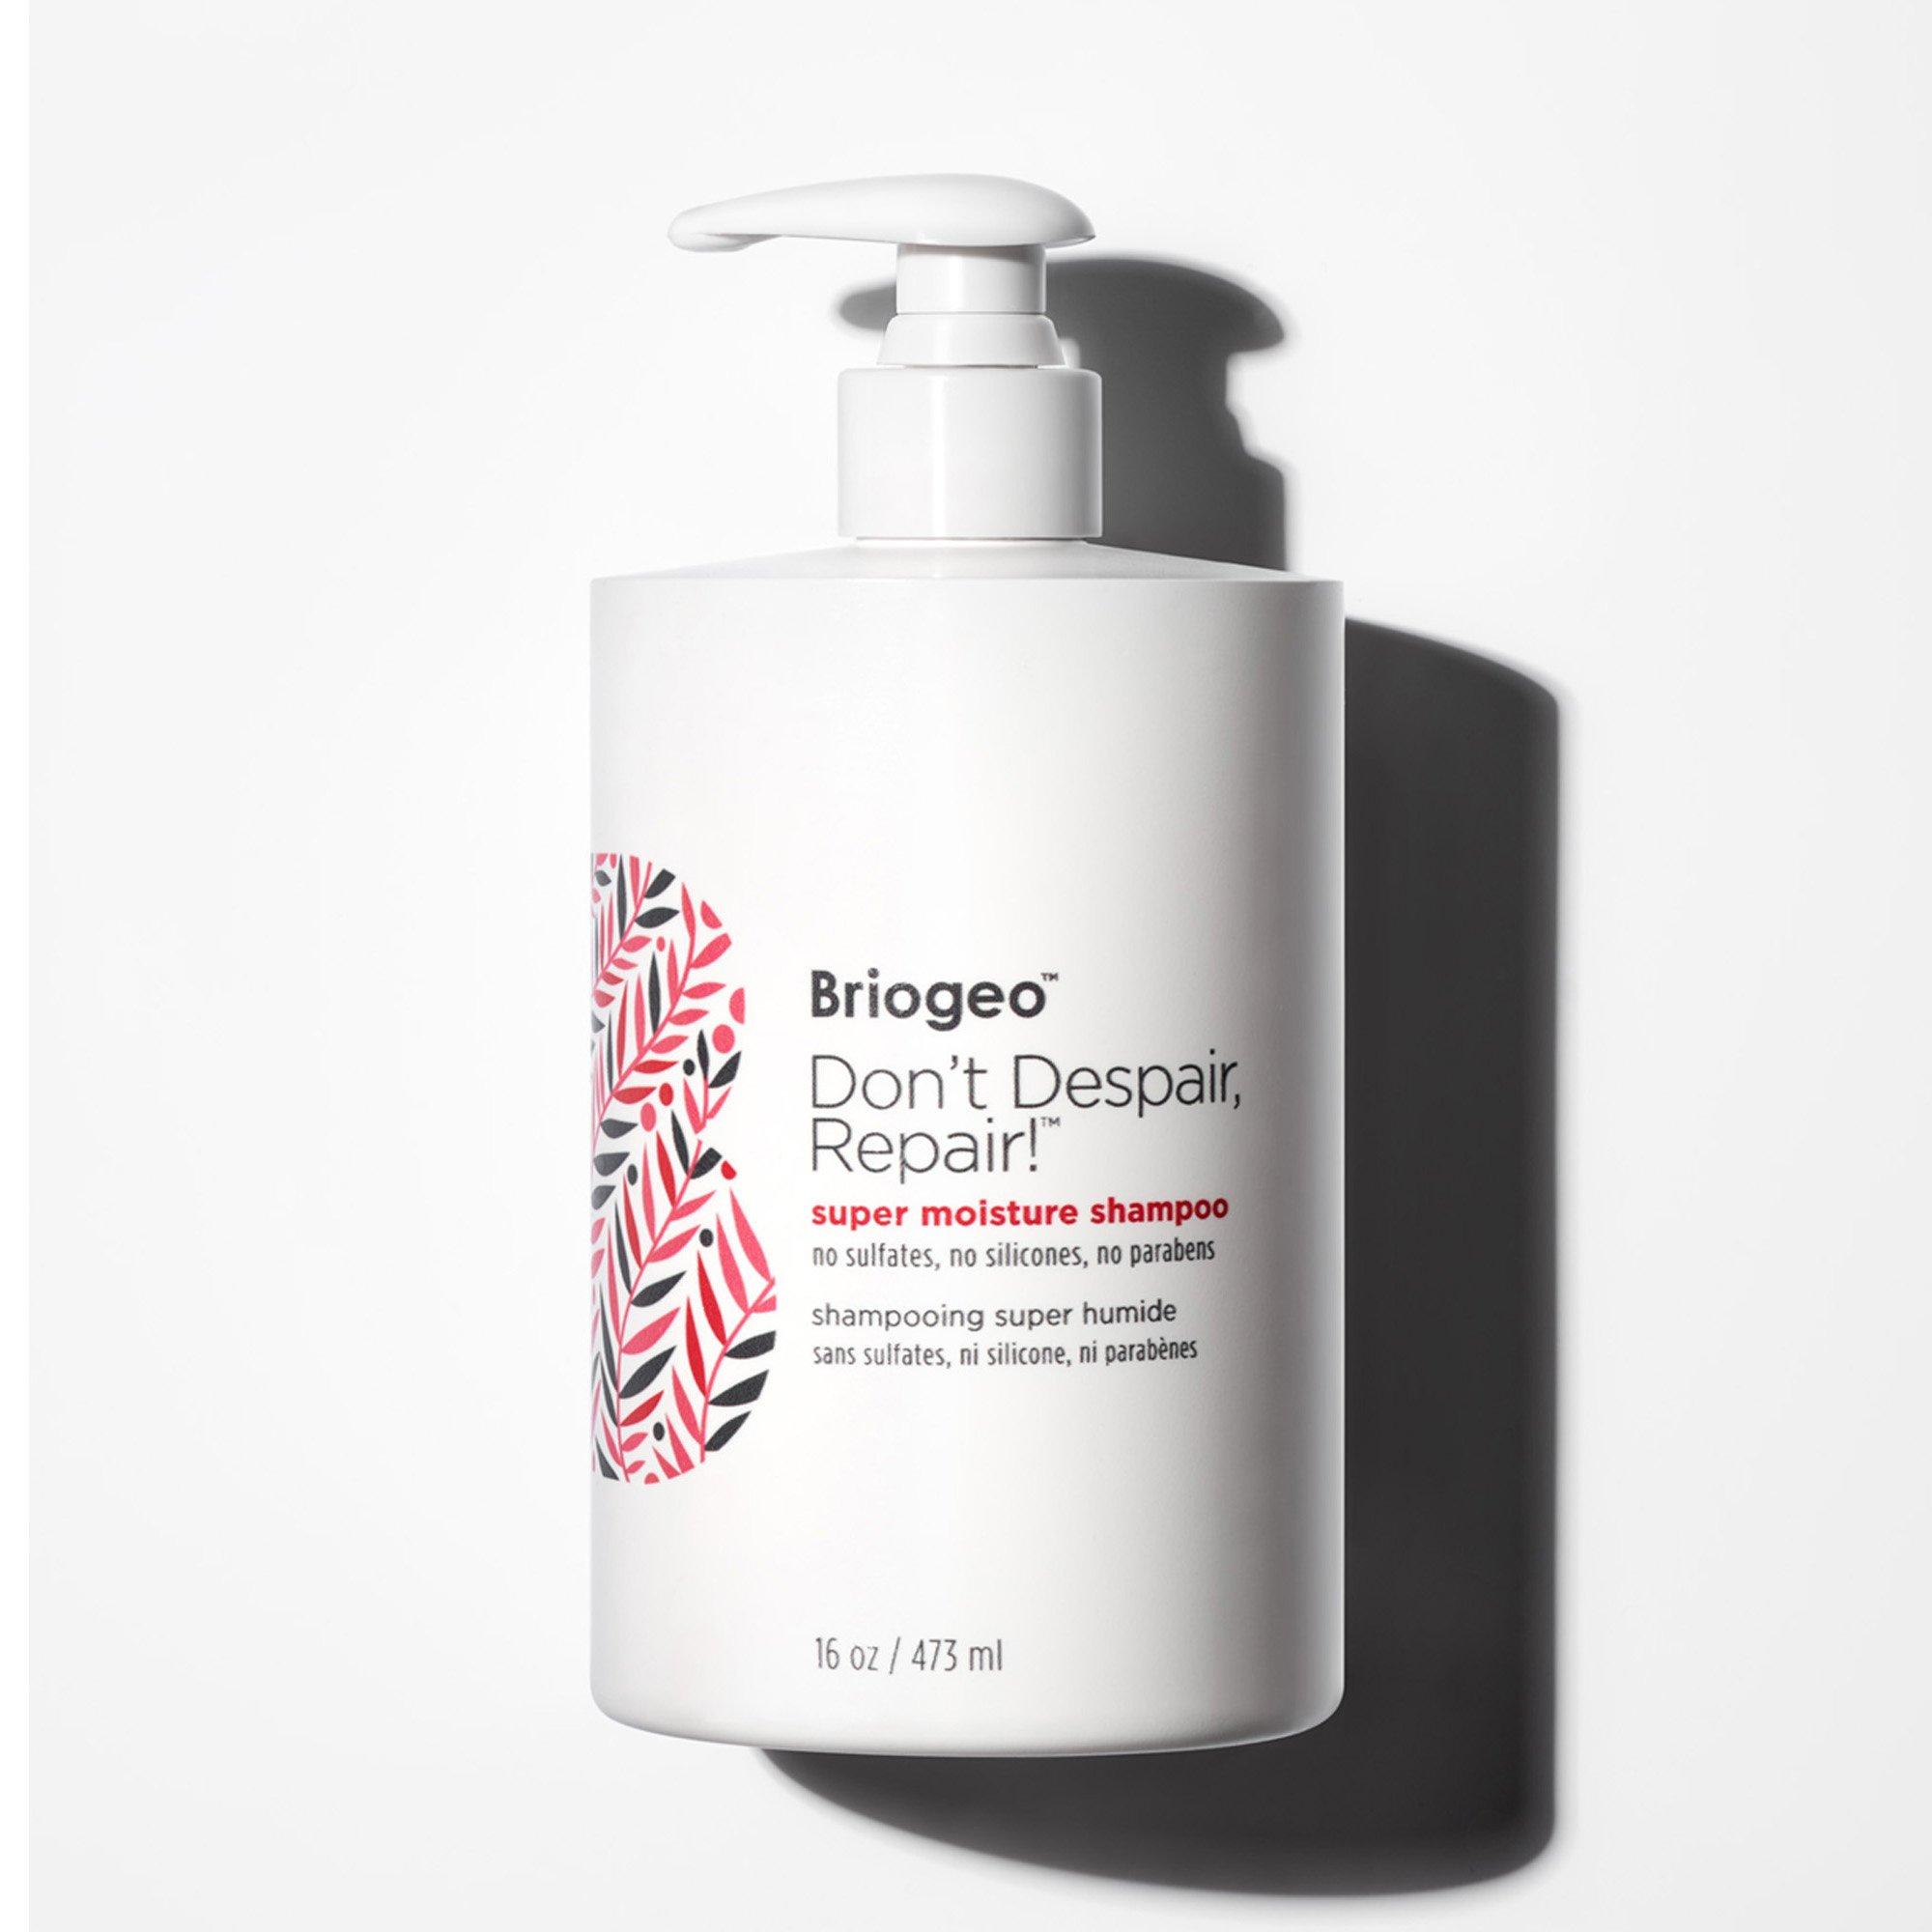 Image of Briogeo Don't Despair, Repair! Super Moisture Shampoo